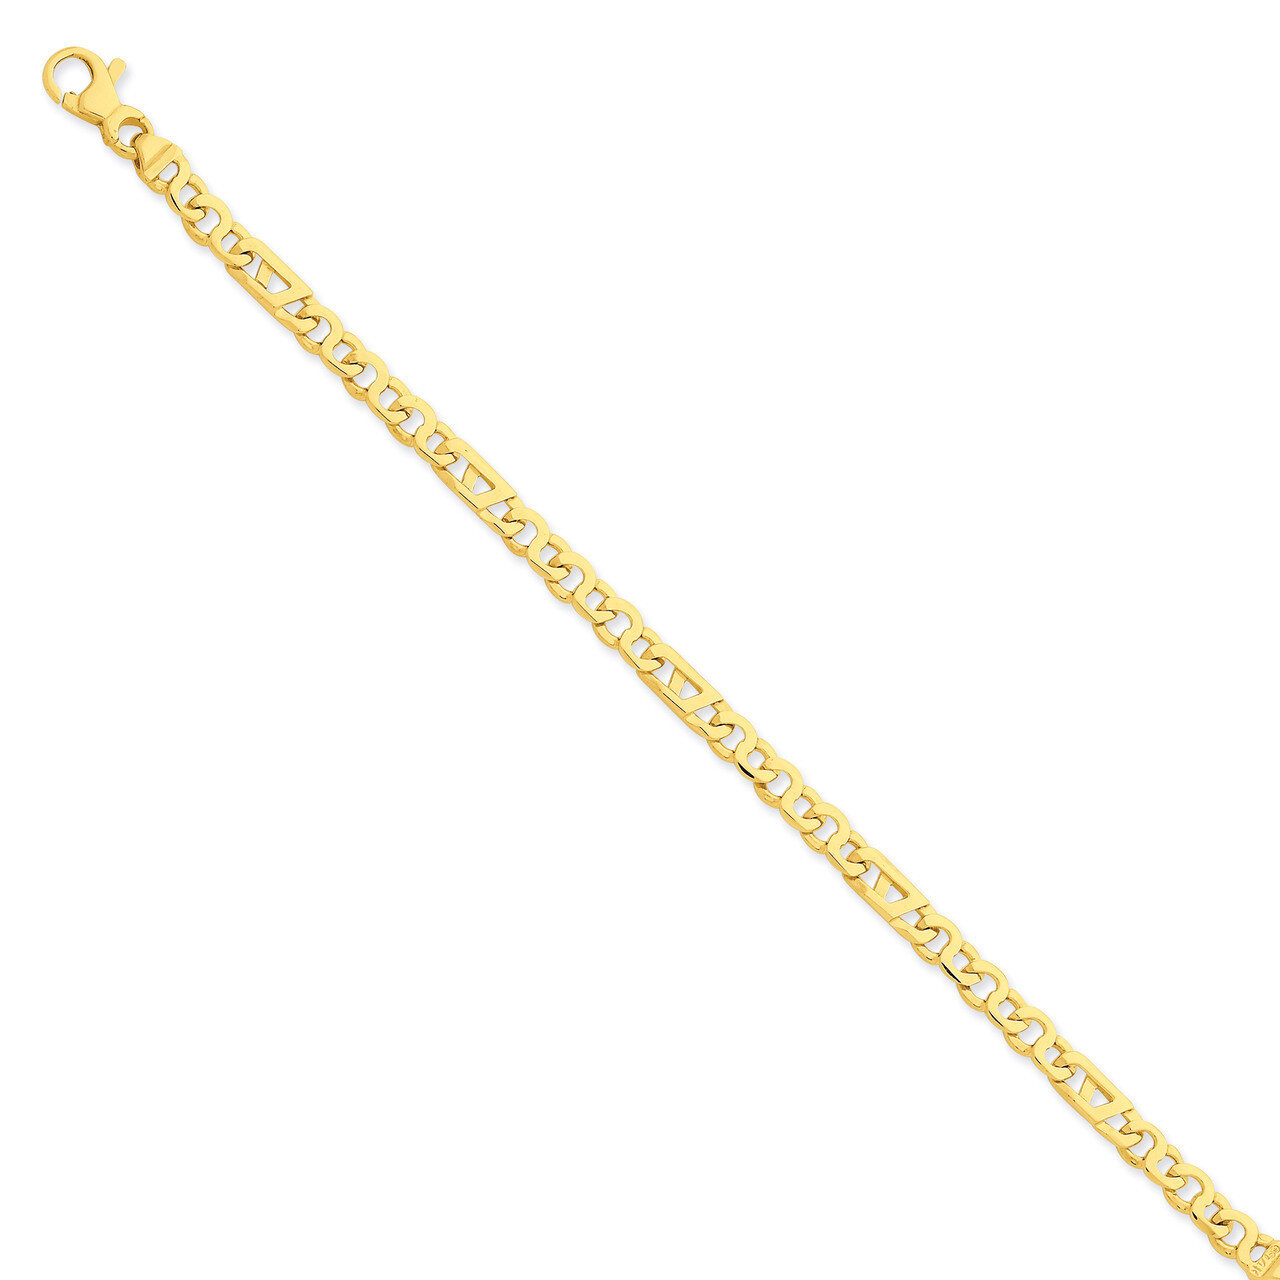 Fancy Link Chain 18 Inch 14k Gold LK670-18